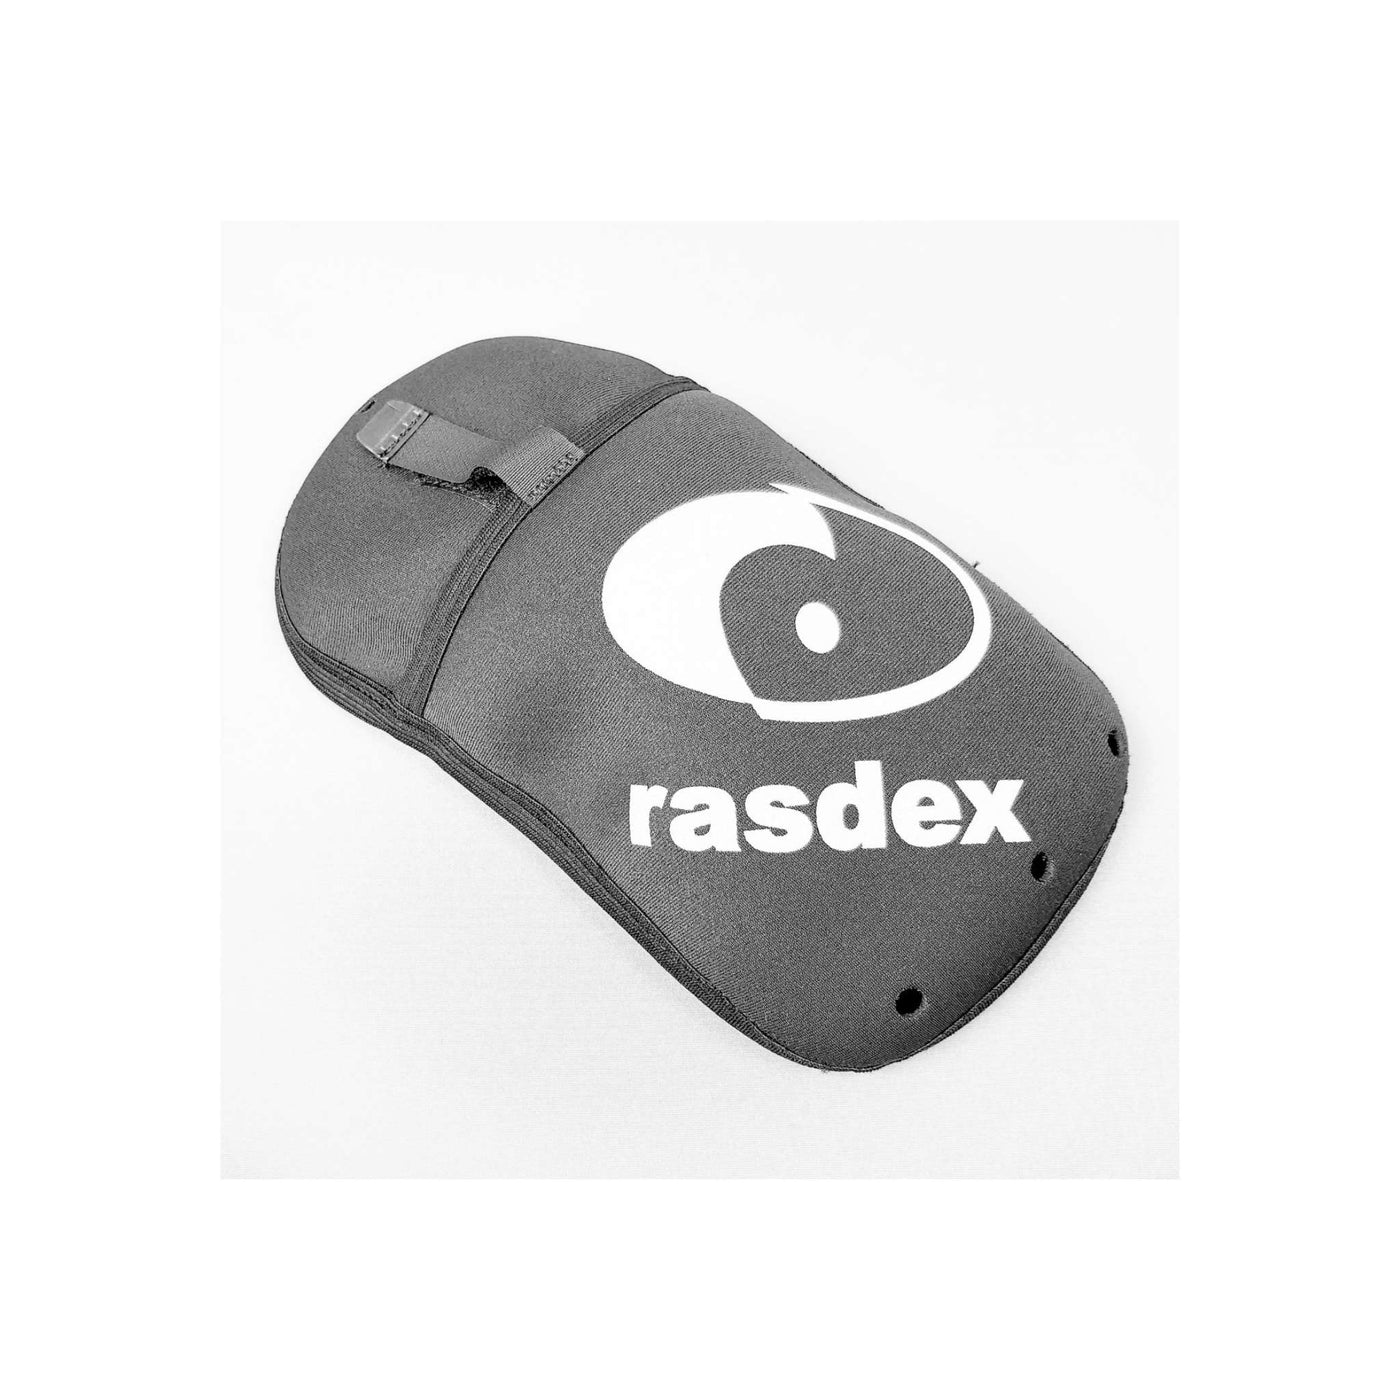 Rasdex Standard Spraydeck with Food Pocket - Left Pocket | Kayak Spraydecks NZ | Further Faster Christchurch NZ